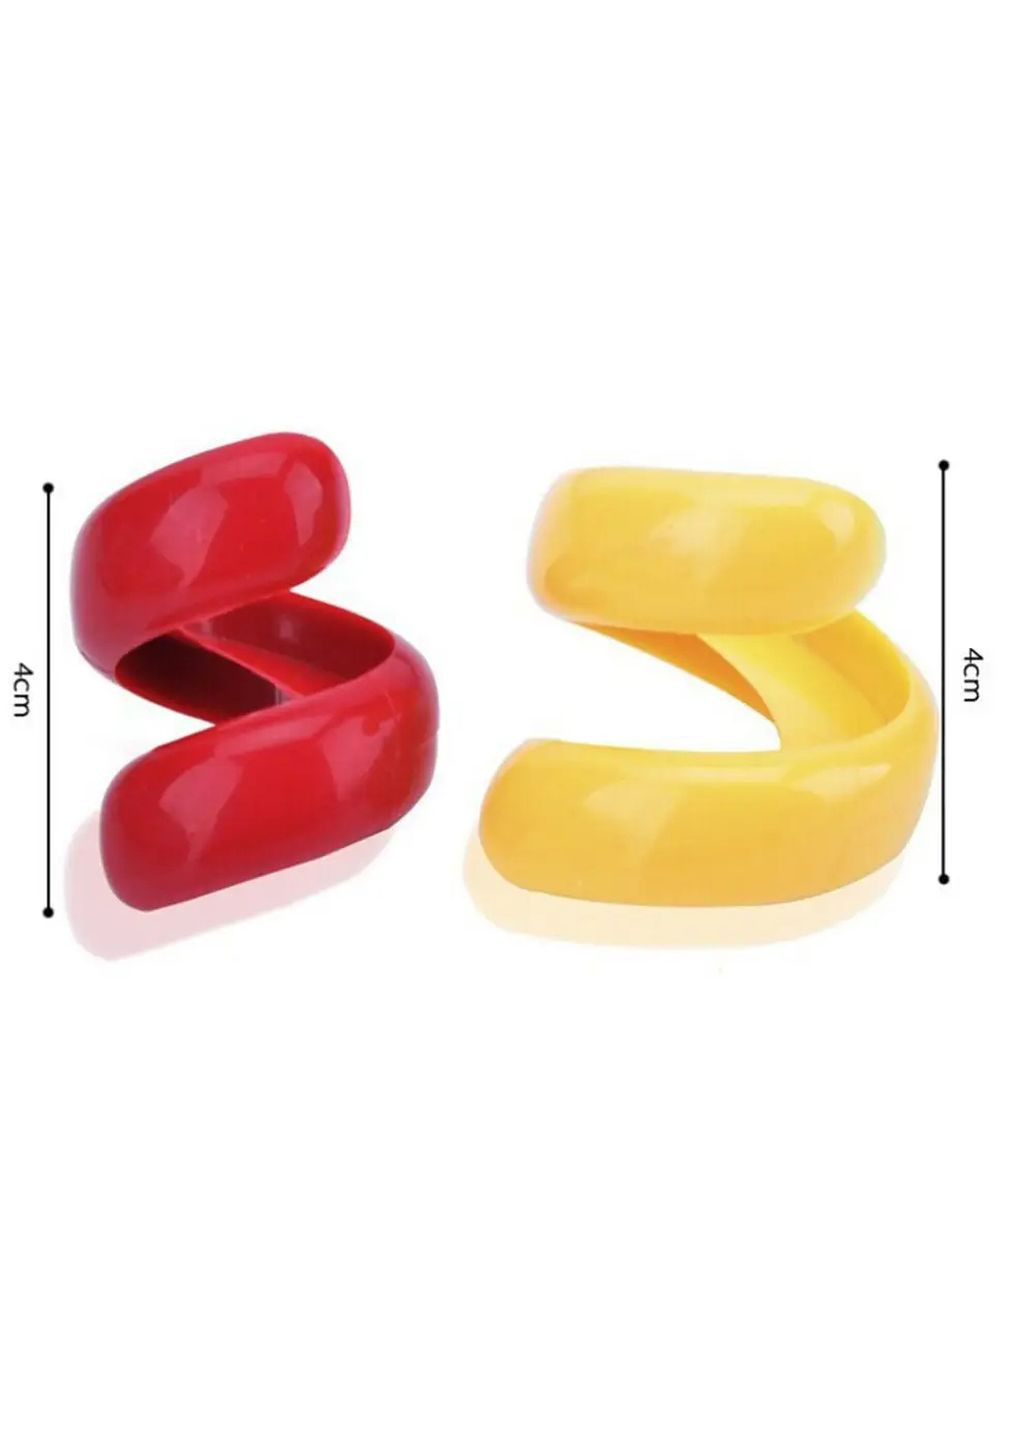 Набір ручних слайсерів із харчового пластику для нарізки сосисок - 2 шт. A-Plus (266988372)